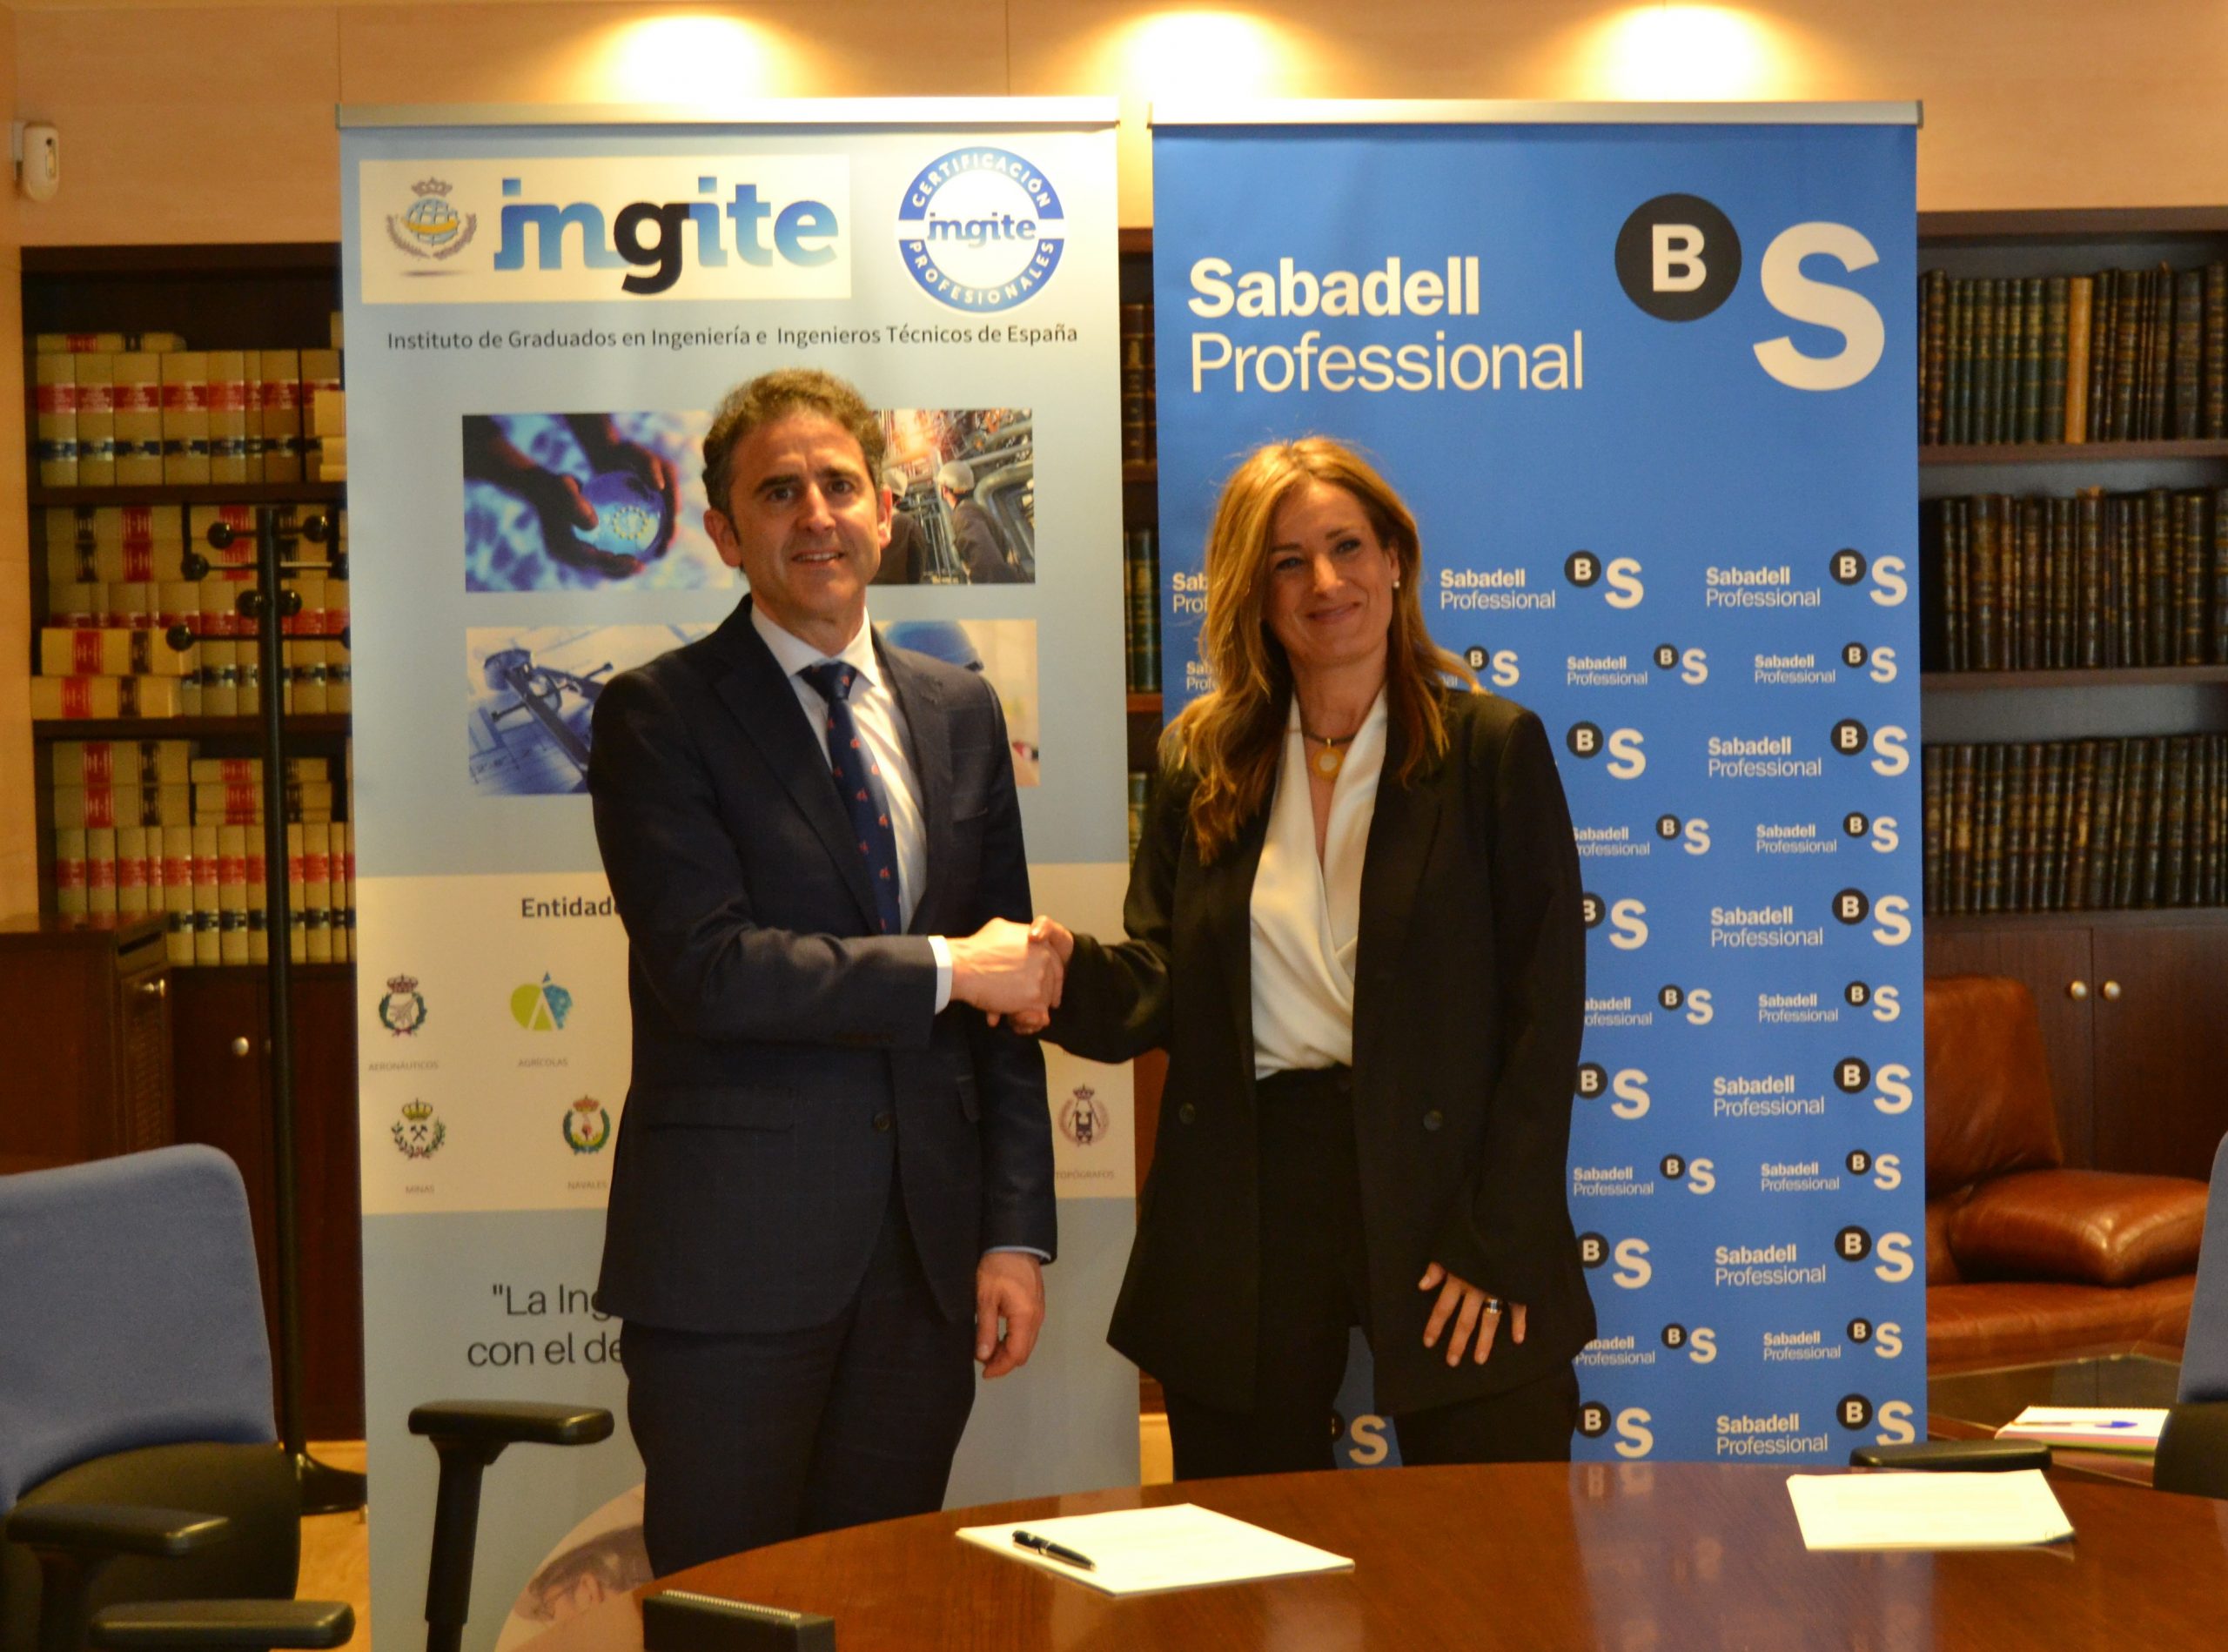 Convenio entre INGITE y Banco Sabadell